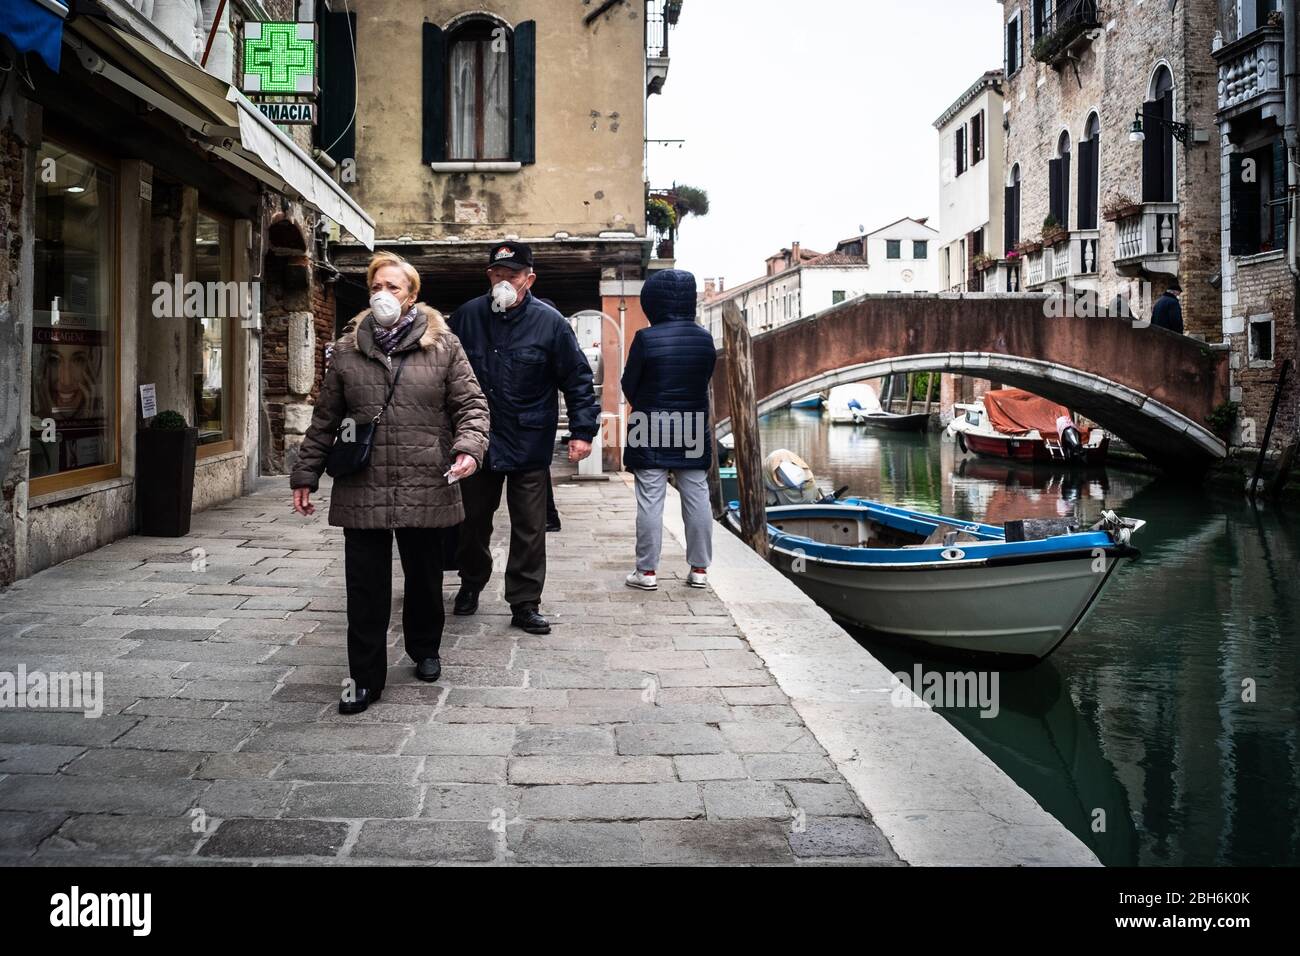 VENEZIA, ITALIA - APRILE 2020: Persone che indossano maschere protettive durante il periodo di chiusura nazionale per la pandemia Covid-19. Foto Stock